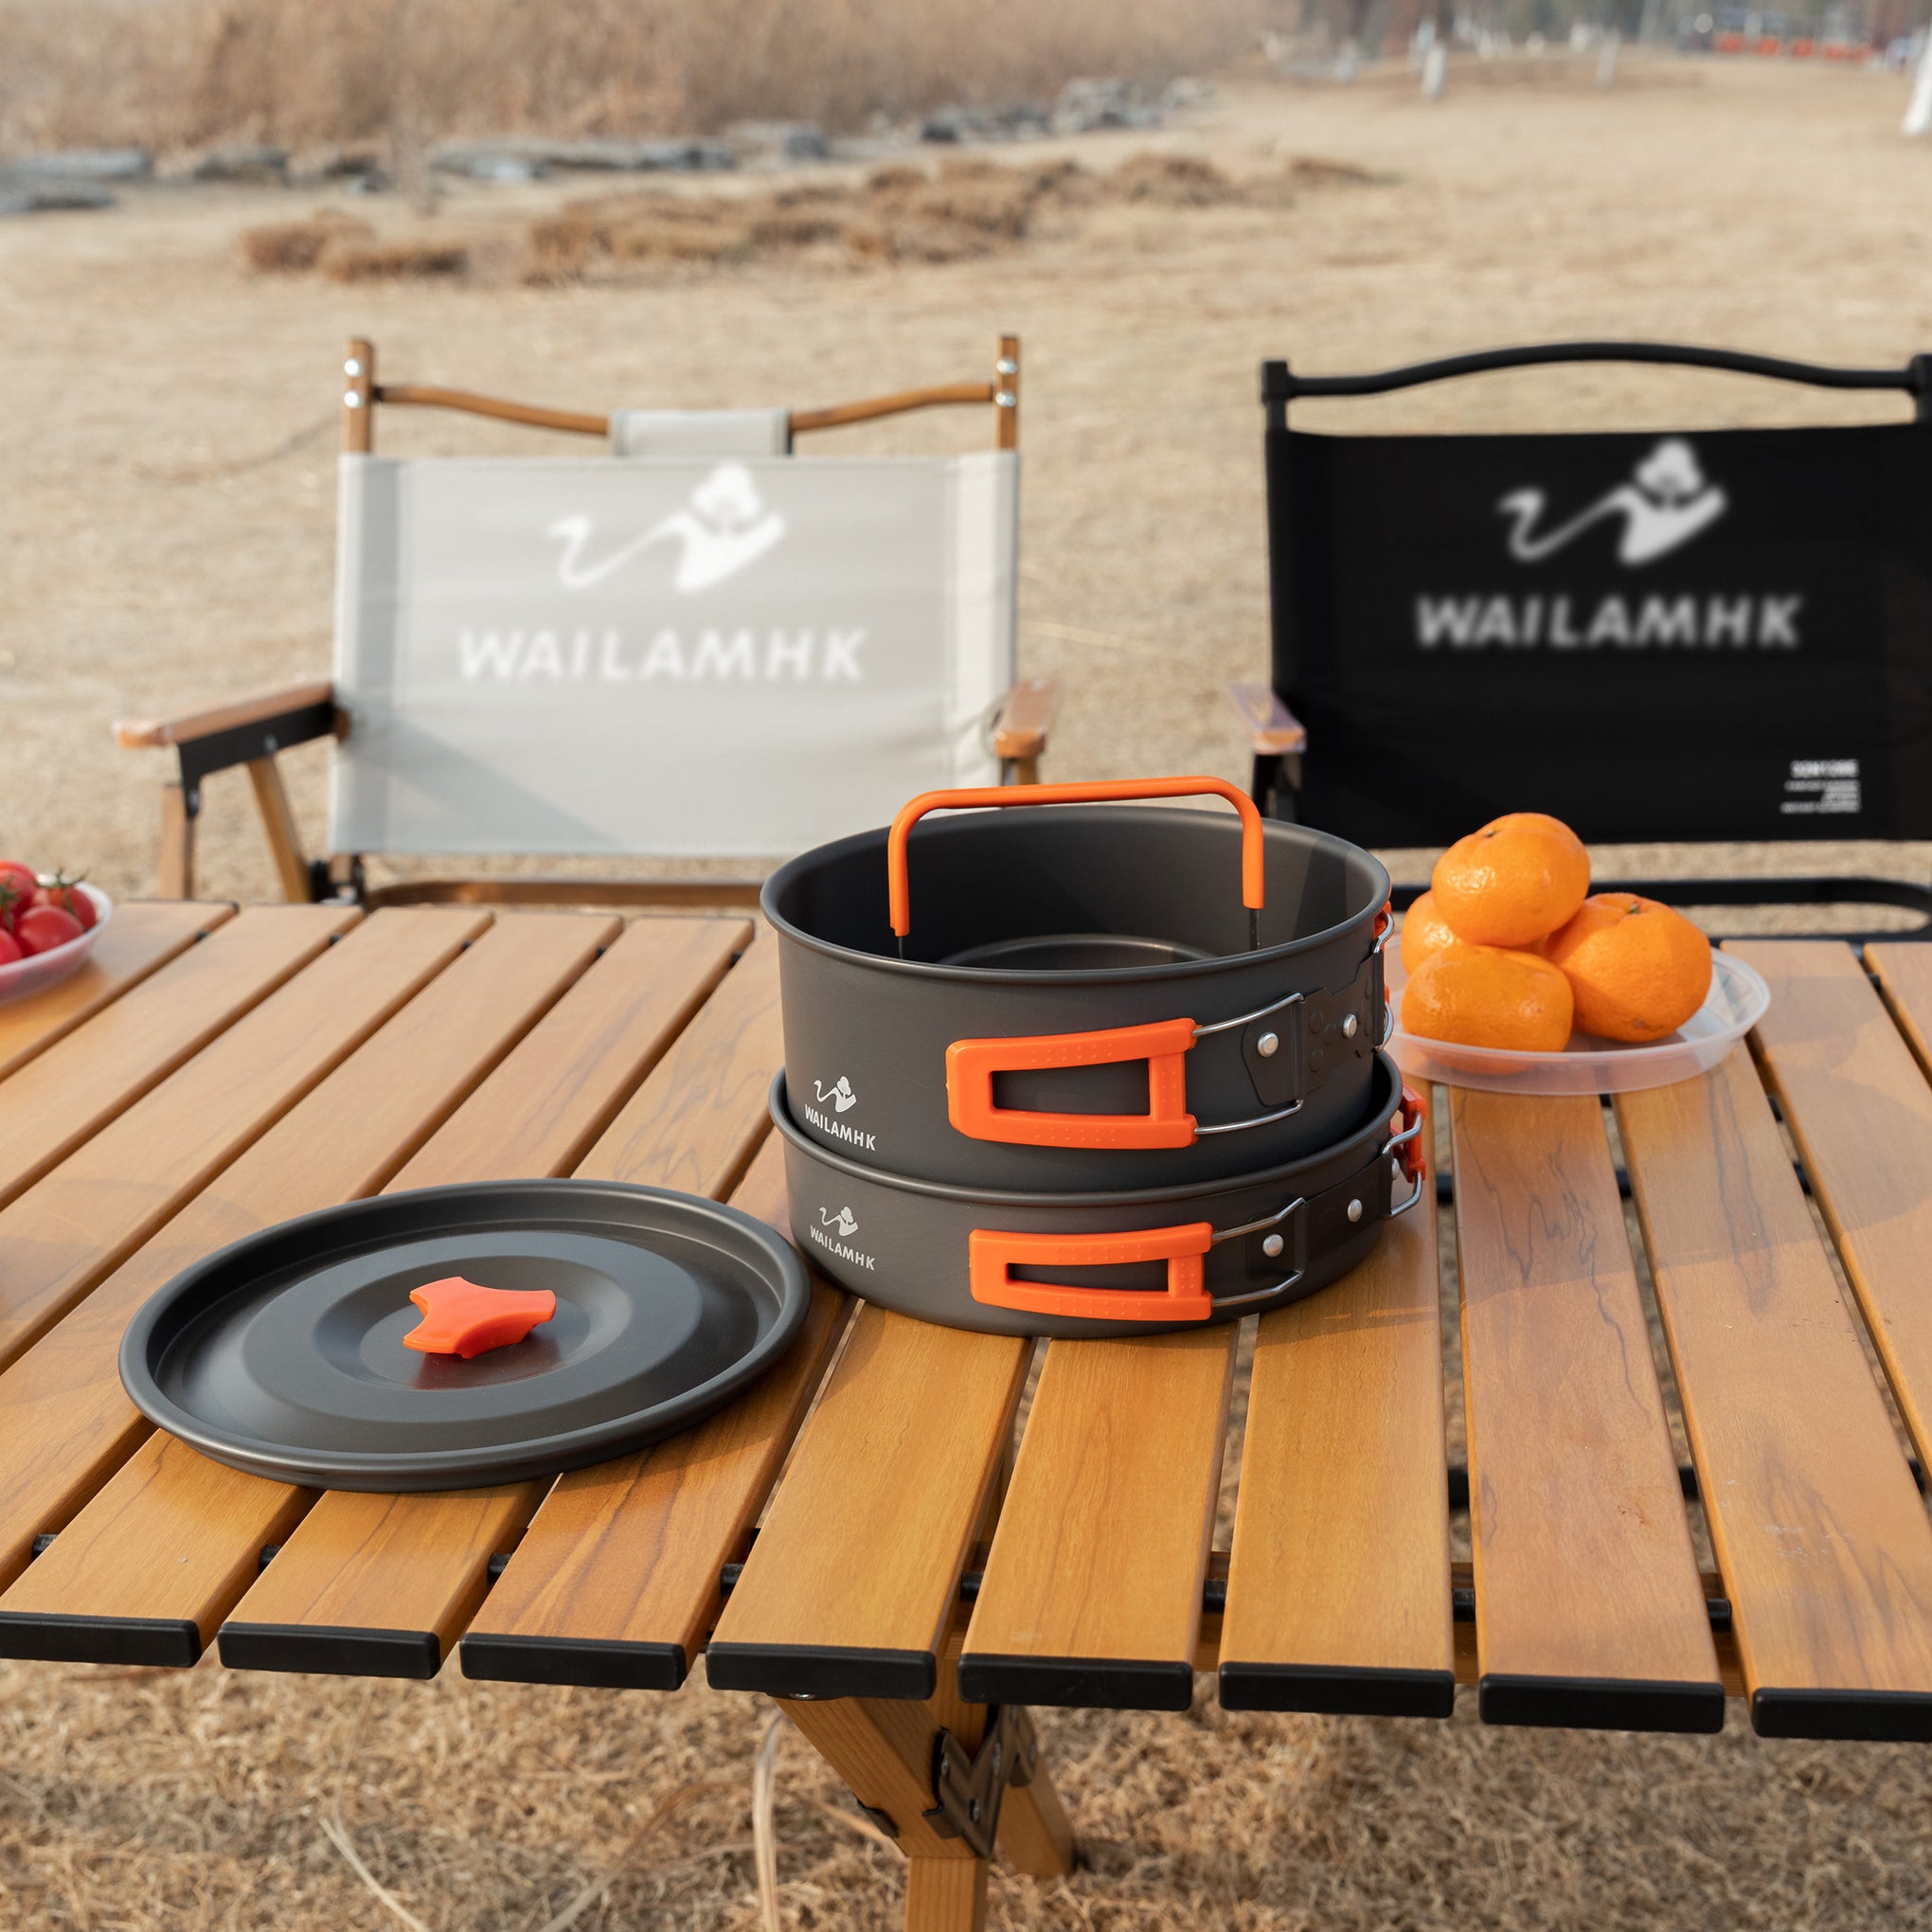 WAILAMHK Camping Pot Set